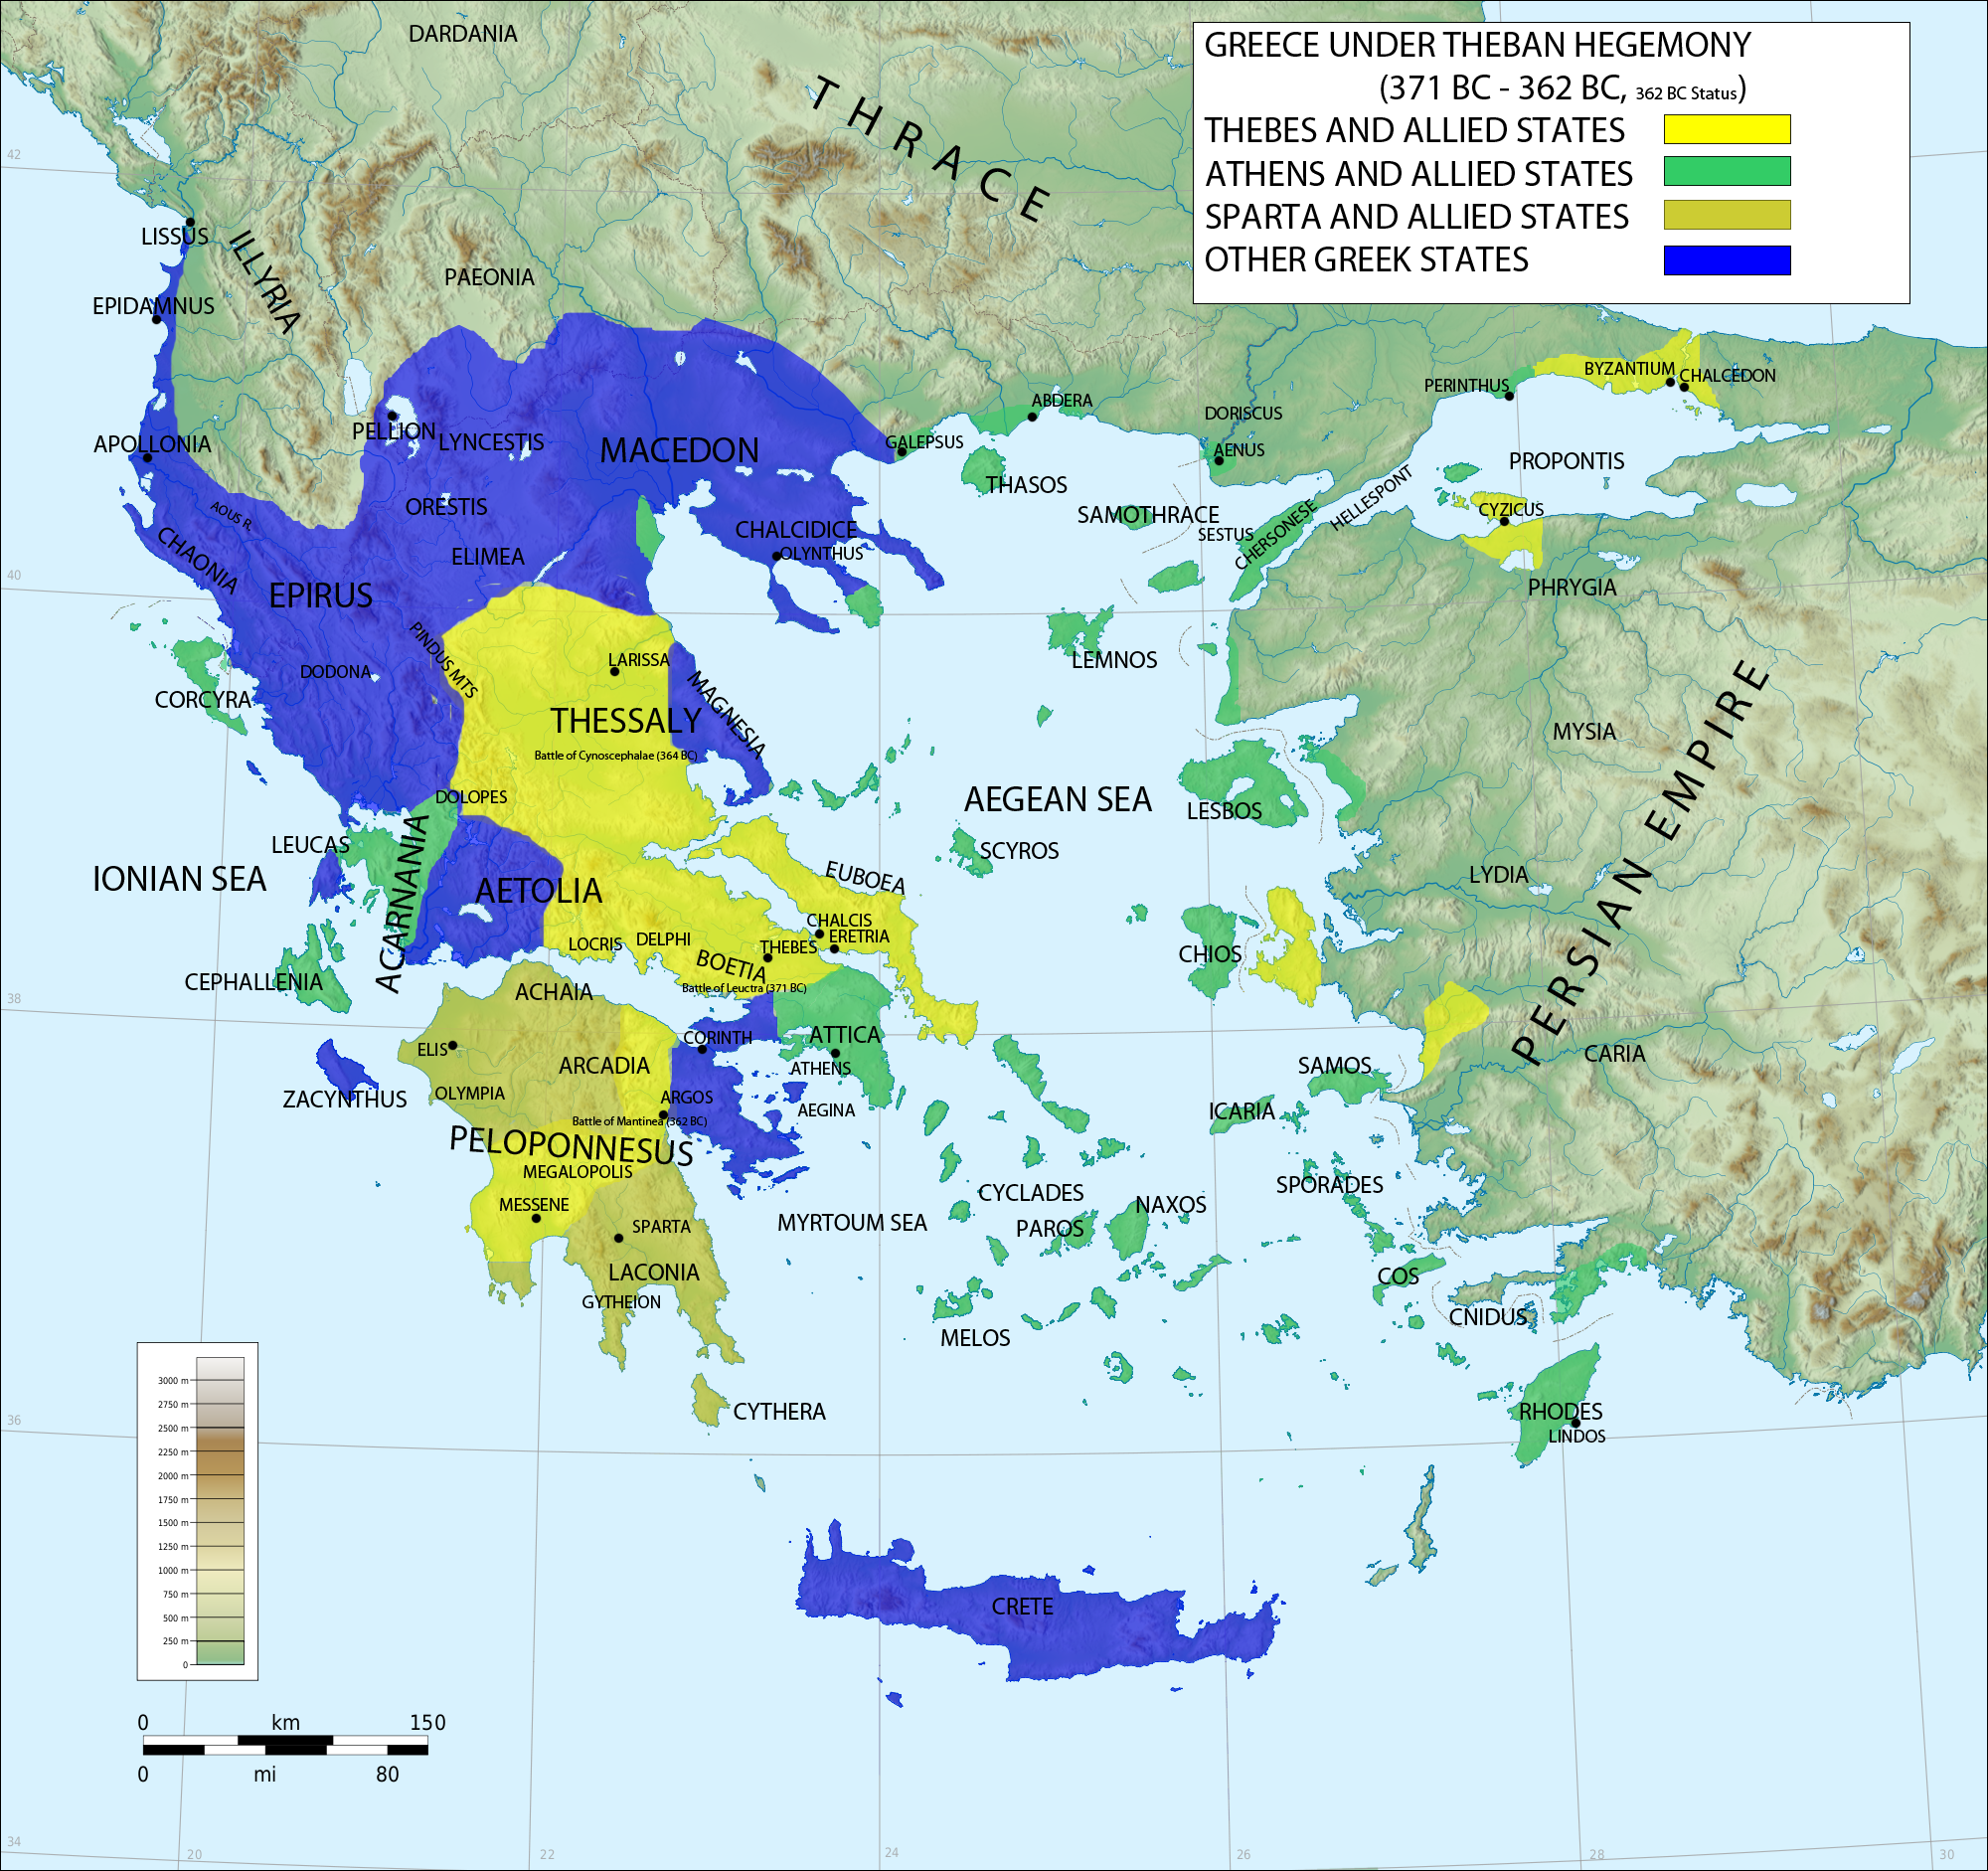 Η δεύτερη μεγάλη μάχη της αρχαιότητας που έγινε γνωστή ως Μάχη της Μαντινείας διεξήχθη περίπου 15 χλμ. βορείως της Τρίπολης το καλοκαίρι του 362 π.Χ. μεταξύ δύο συνασπισμών που είχαν επικεφαλής αντίστοιχα τη Θήβα και τη Σπάρτη, τις δύο τότε ισχυρότερες πόλεις της Ελλάδας, με έπαθλο την ηγεμονία της.